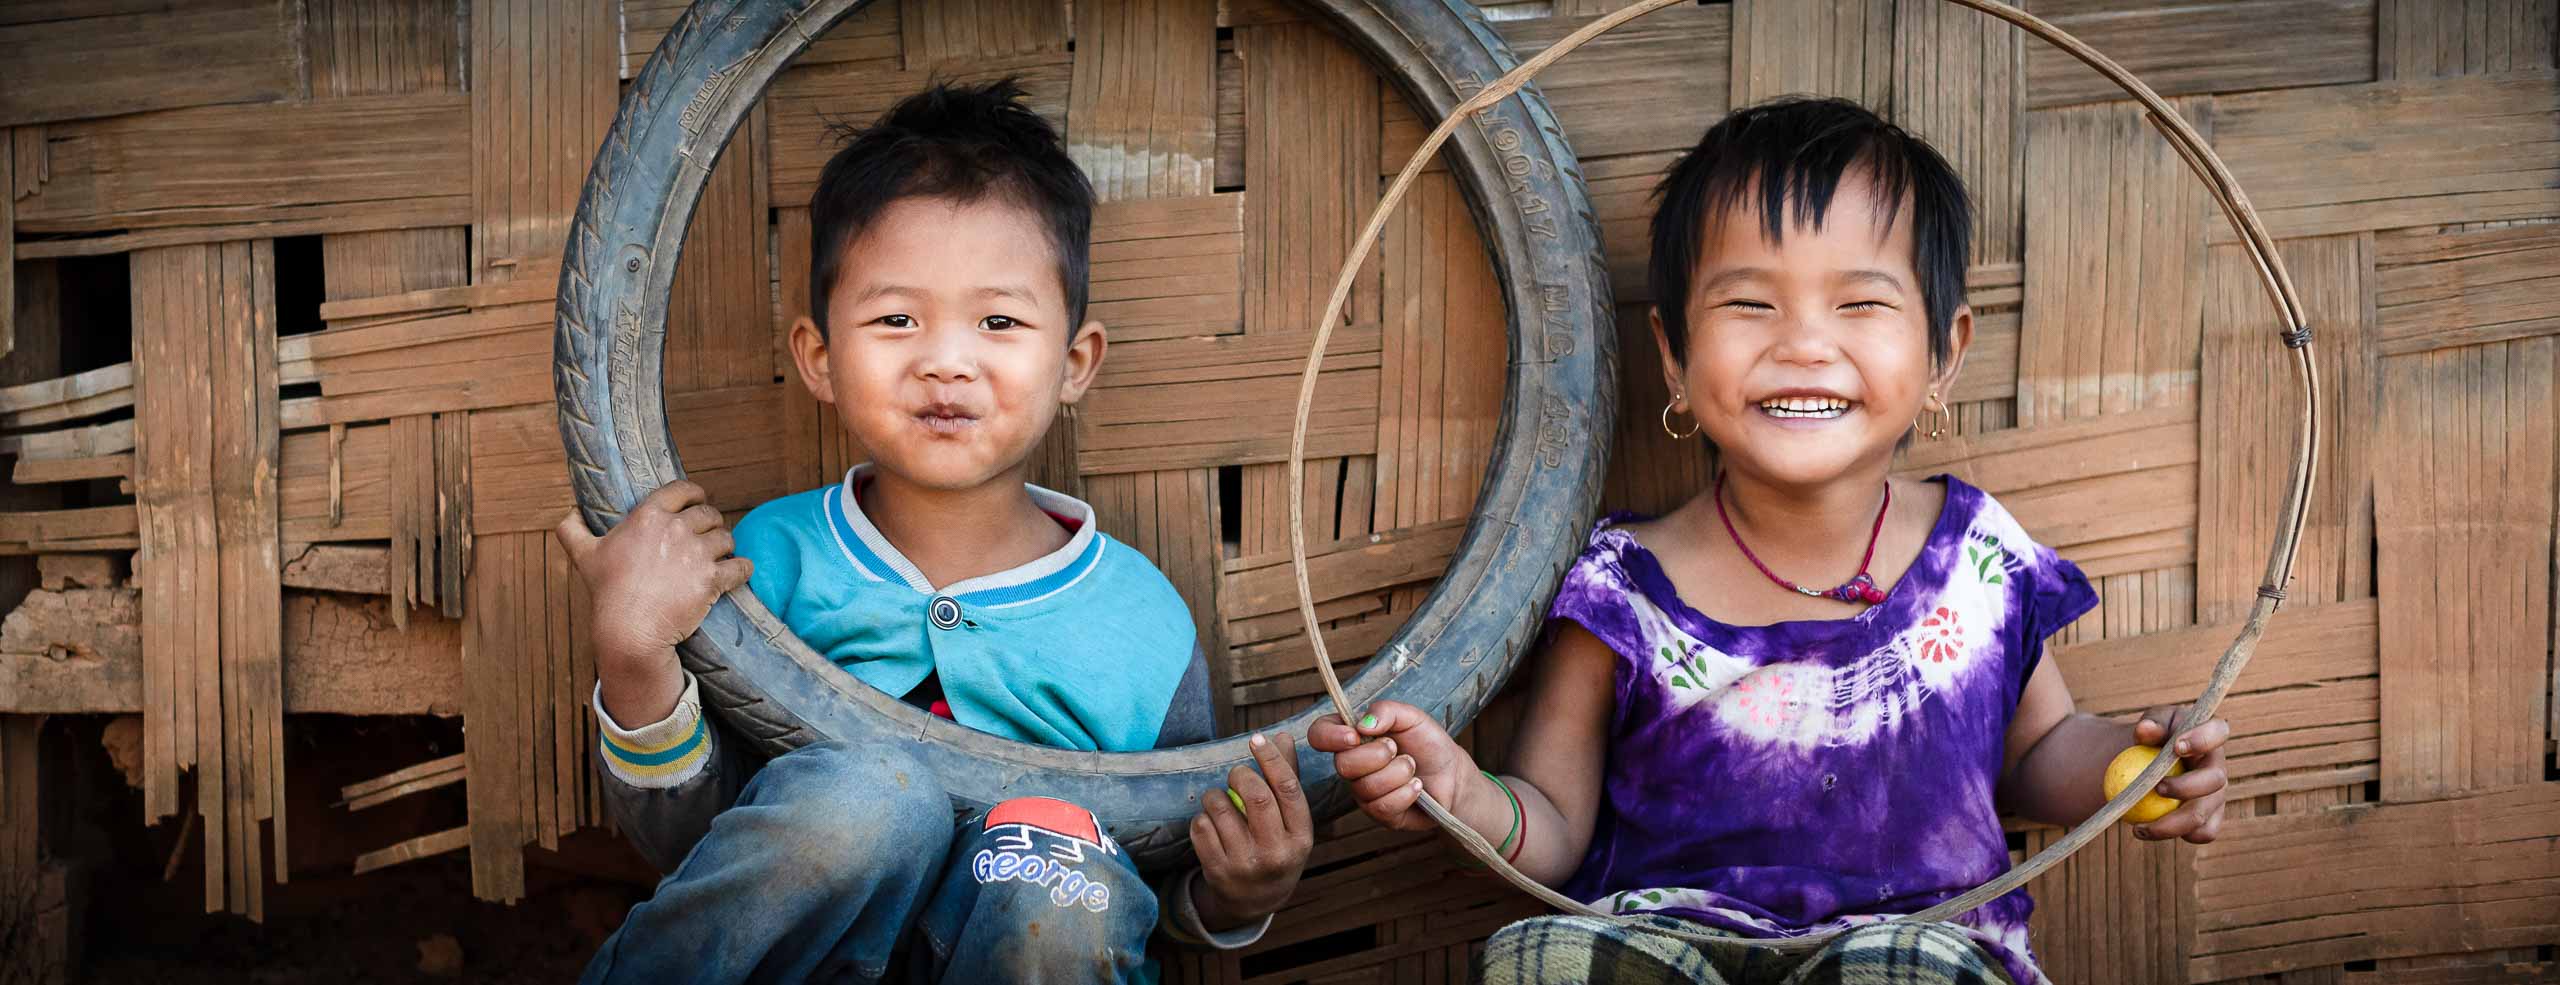 Deux enfants d'un village de montagnes sont assis côte à côte en souriant, Ethnie Pa-o en Birmanie, Asie du Sud-Est